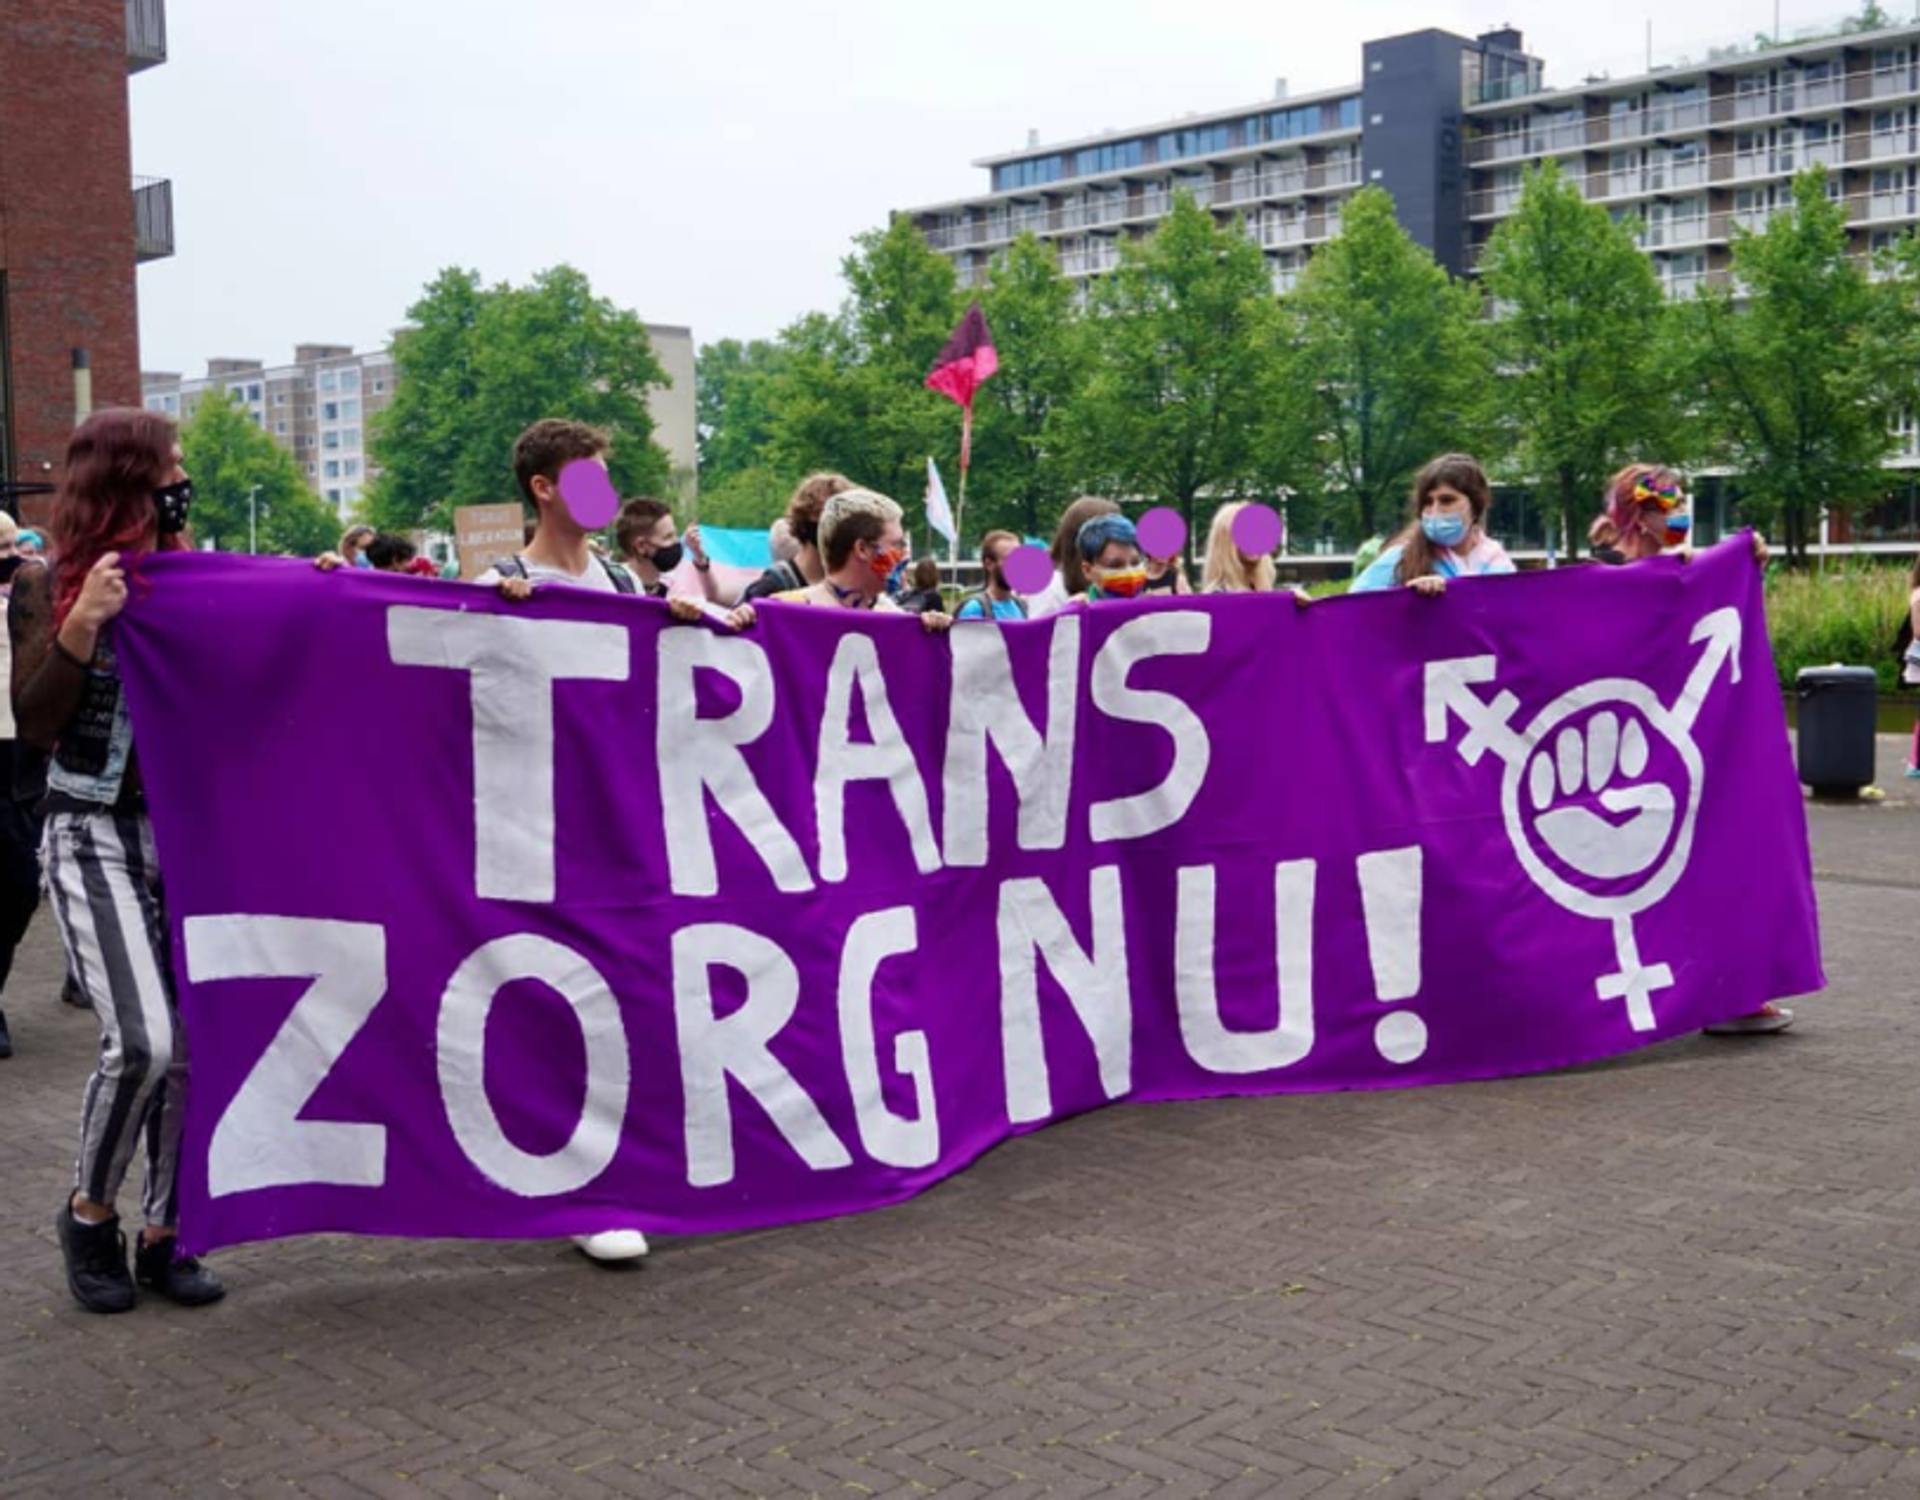 Afbeelding van Welke teksten maakten indruk tijdens de #transzorgnu-demonstratie?